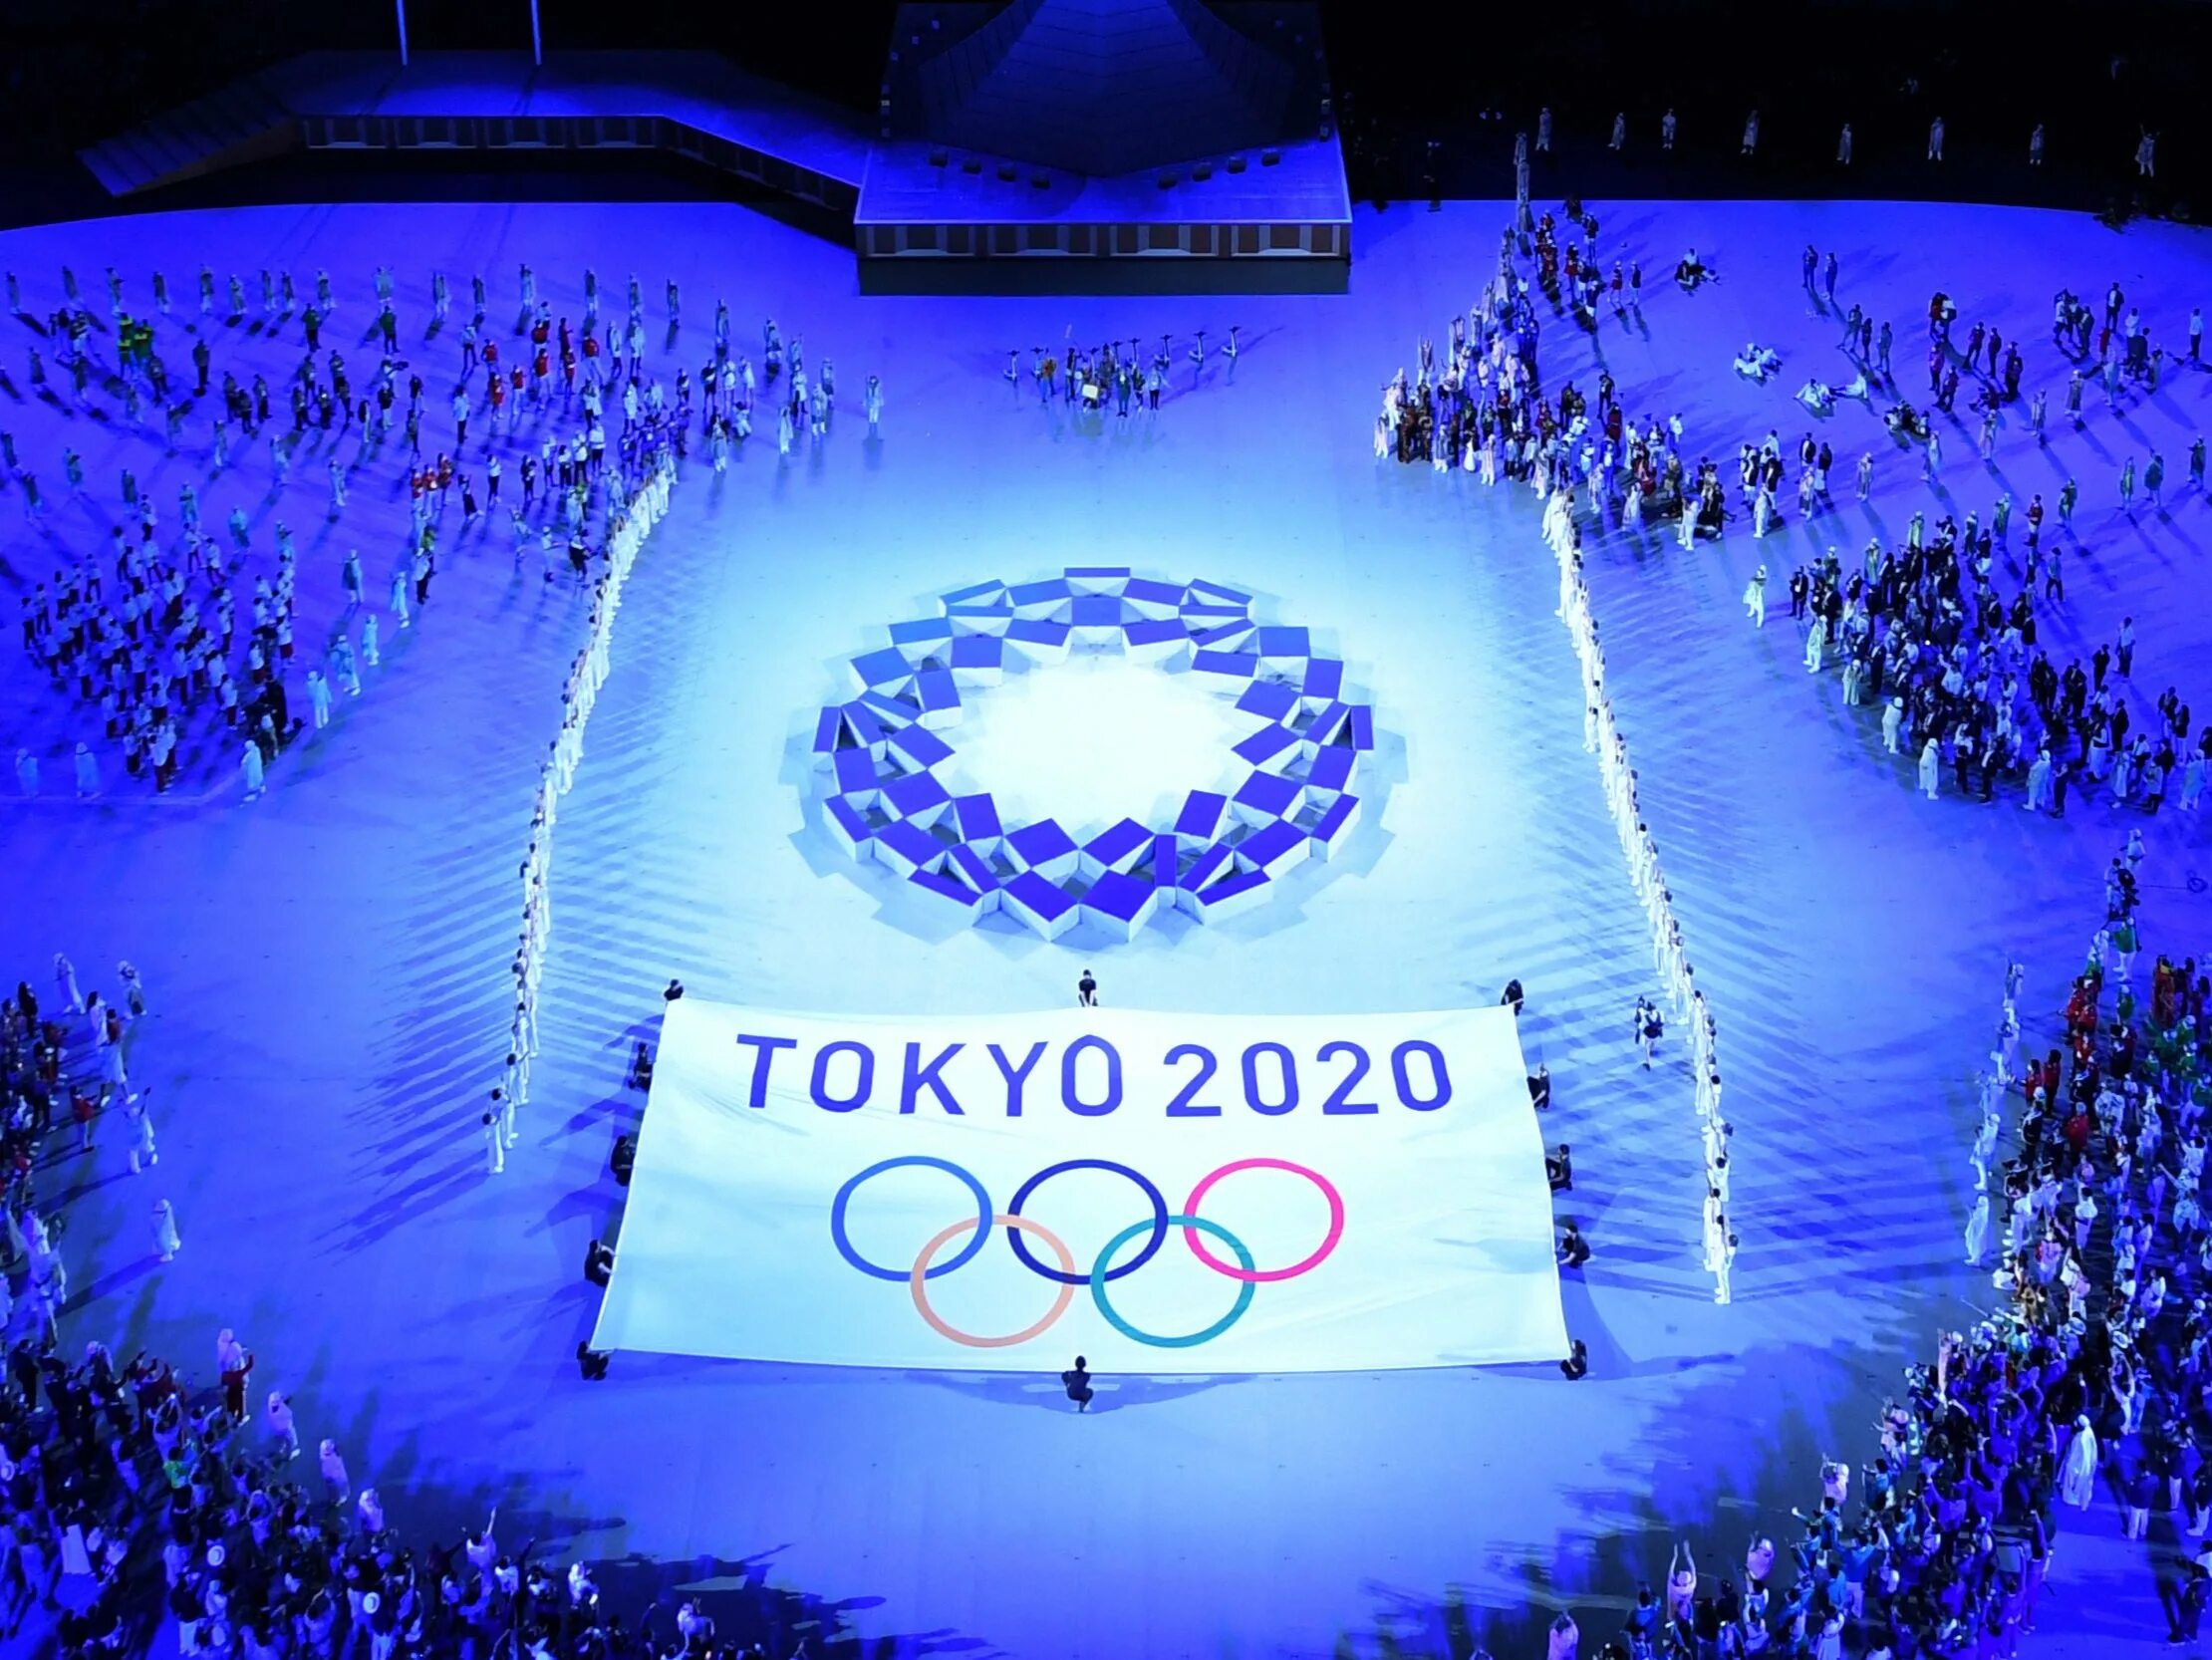 Tokyo 2020 olympics. Олимпийские игры в Токио 2020. Летние Олимпийские игры 2020 года. Стадион Токио 2020 Олимпийских игр.